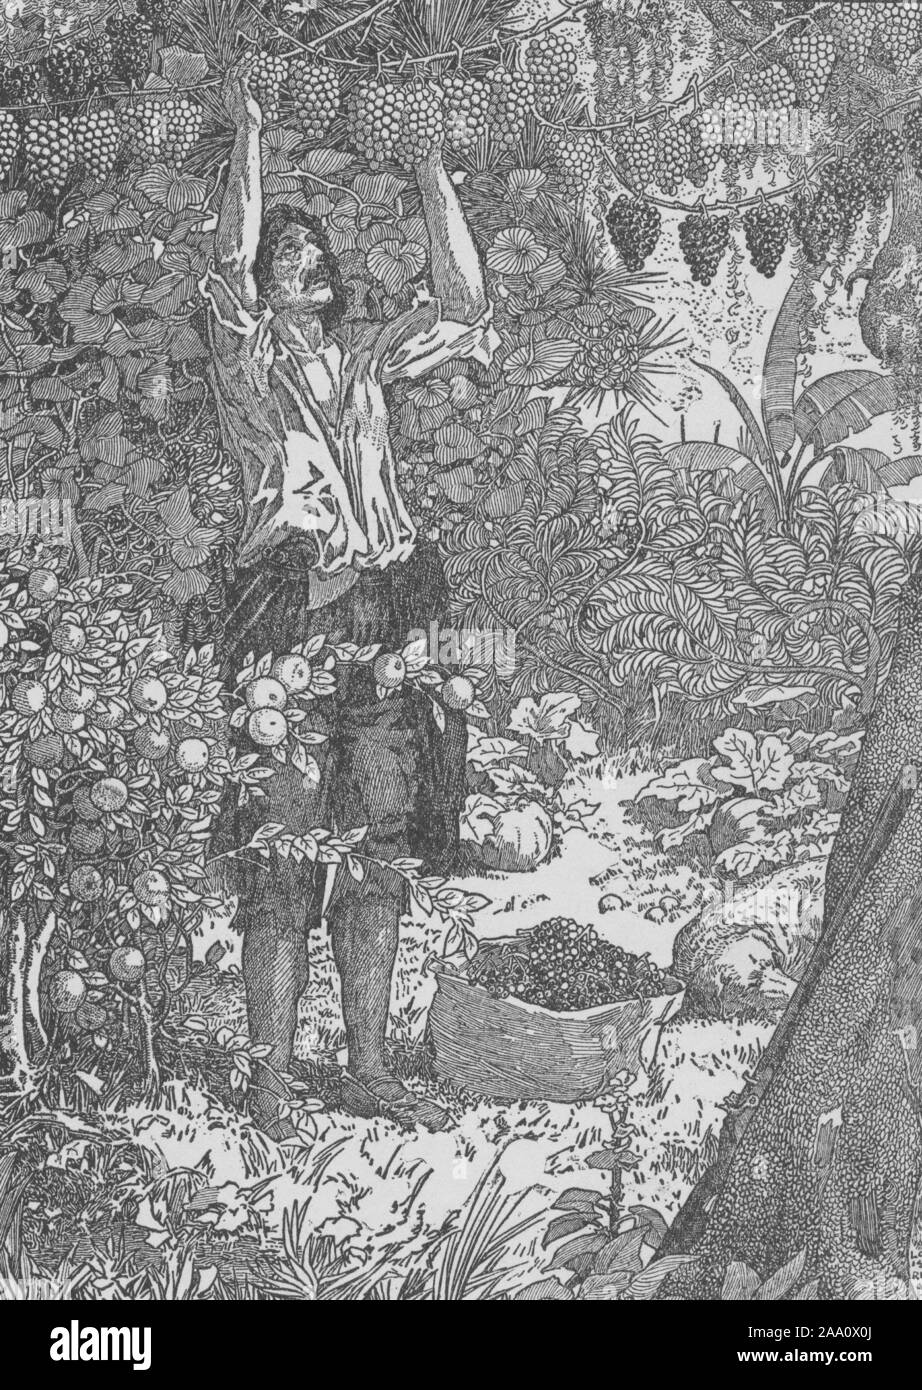 Illustrator. Monochrome Darstellung einer Szene aus dem Buch "Robinson Crusoe" von Daniel Defoe, mit Crusoe hängenden wilden Trauben aus Weinbergen zu trocknen, von Louis Rhead, von Harper Brothers, 1900 veröffentlicht. Von der New York Public Library. () Stockfoto